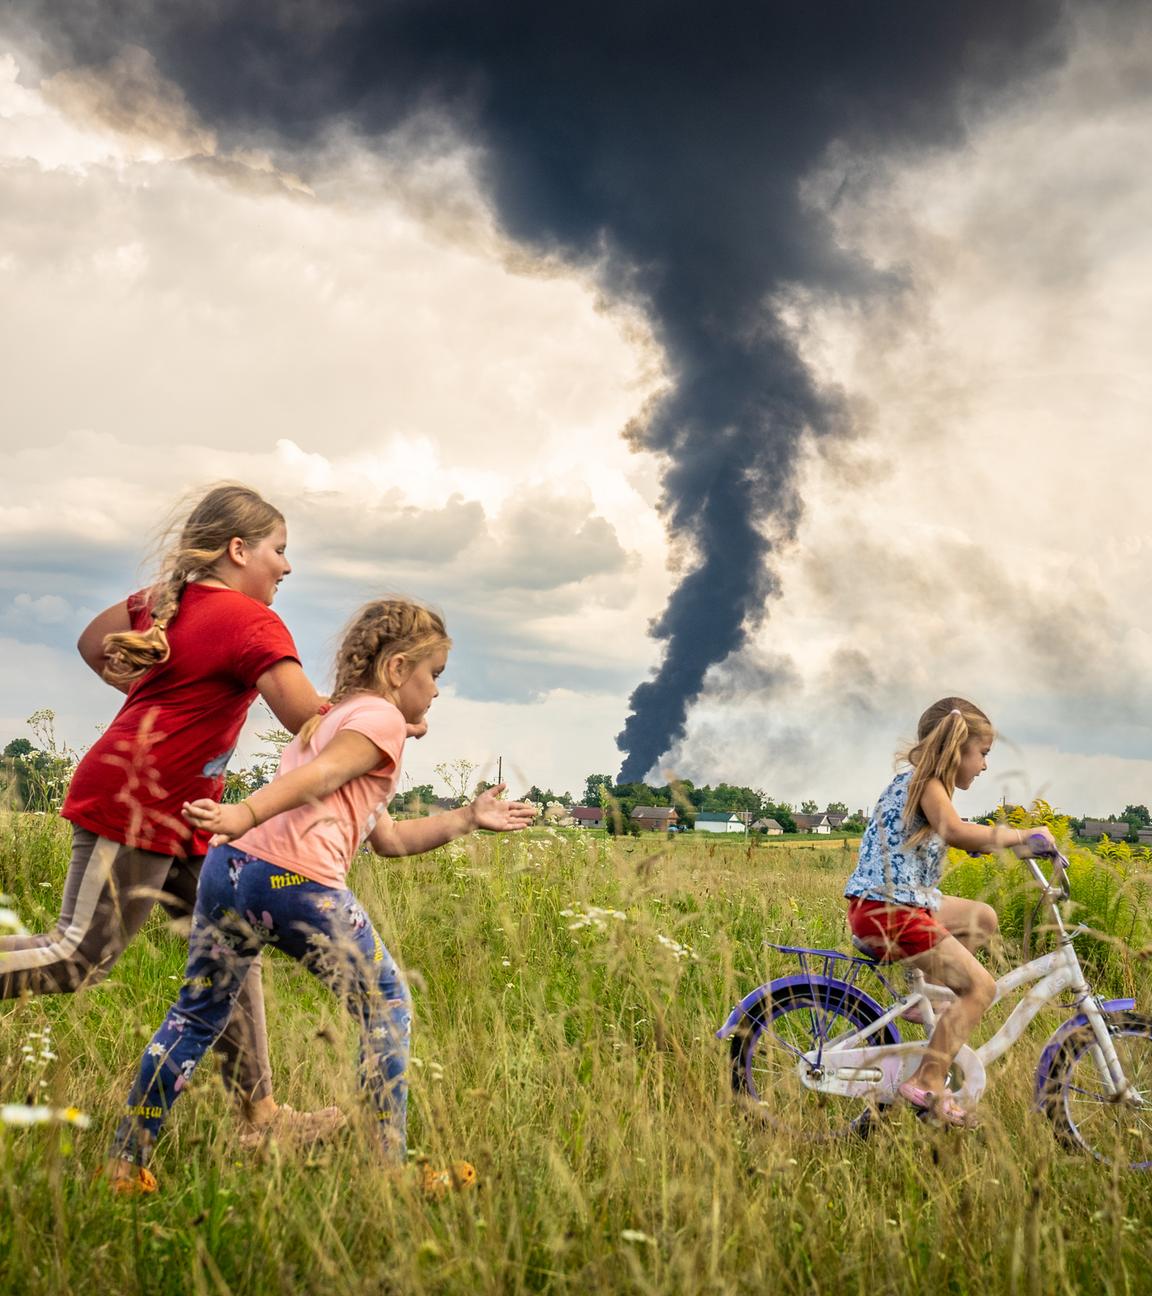 Drei Mädchen fahren Fahrrad in einem Feld, dahinter ist eine schwarze Rauchwolke zu sehen.